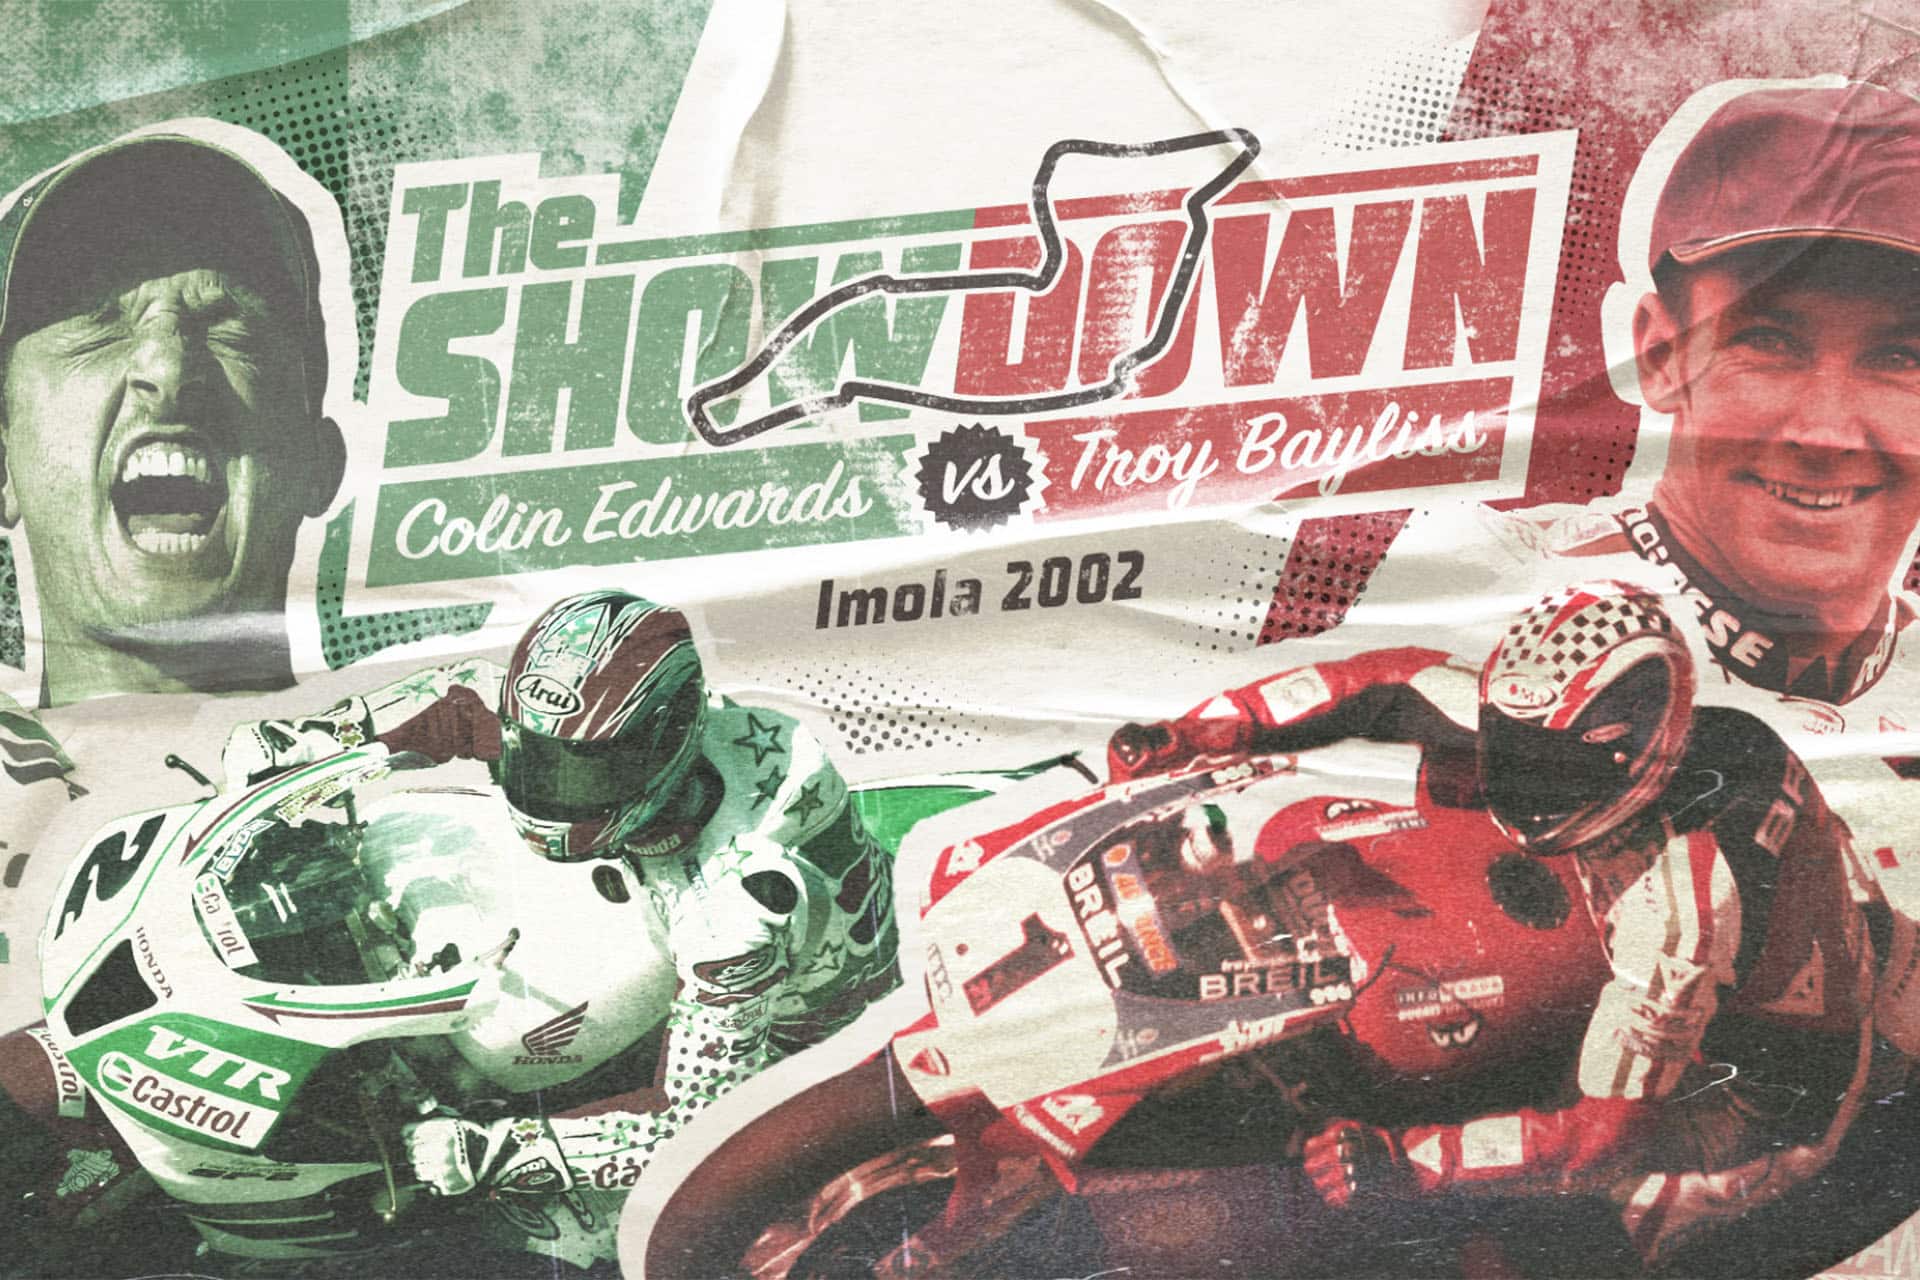 “The Showdown” el documental del día más increíble del WSBK